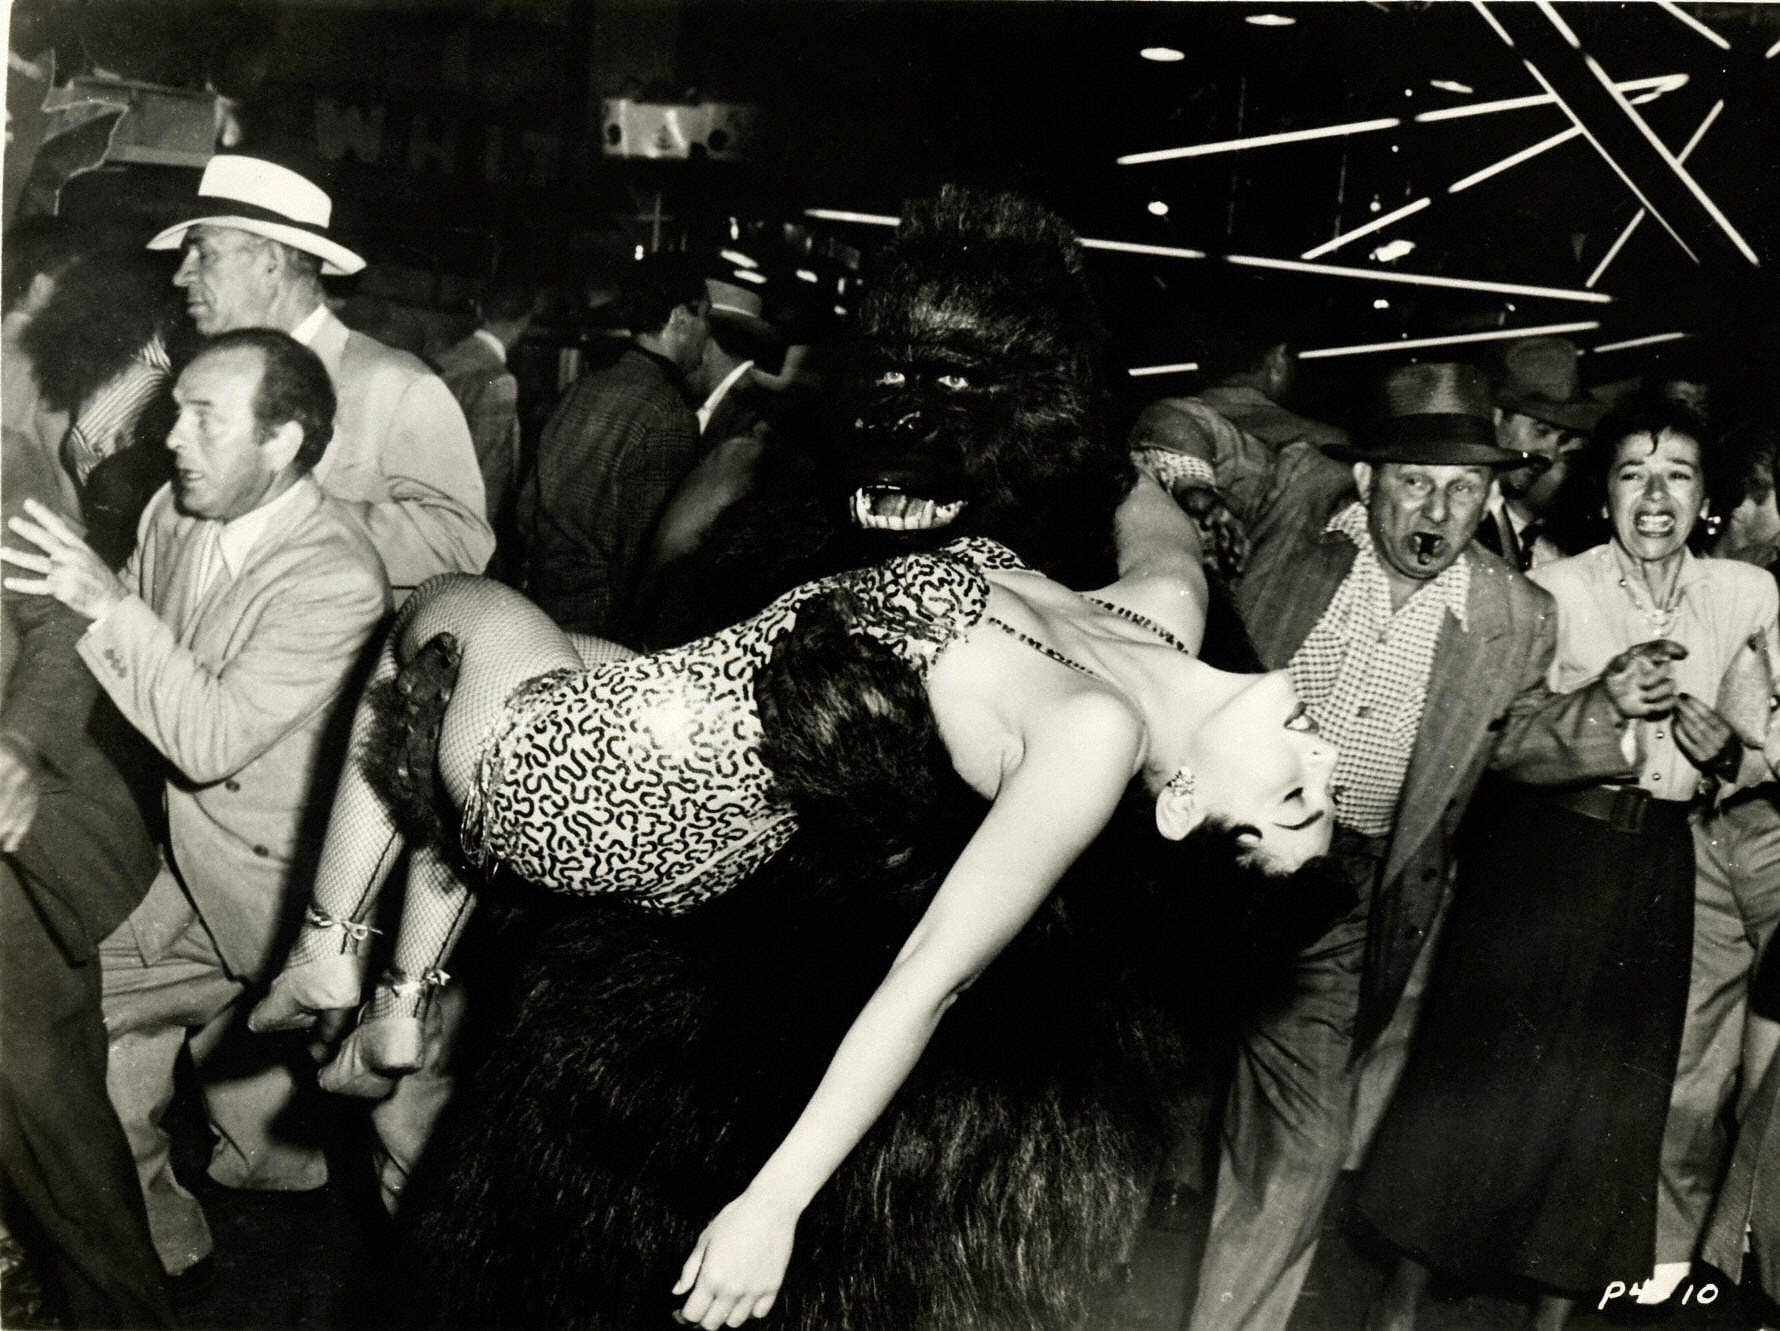 "Gorilla at large", 1954